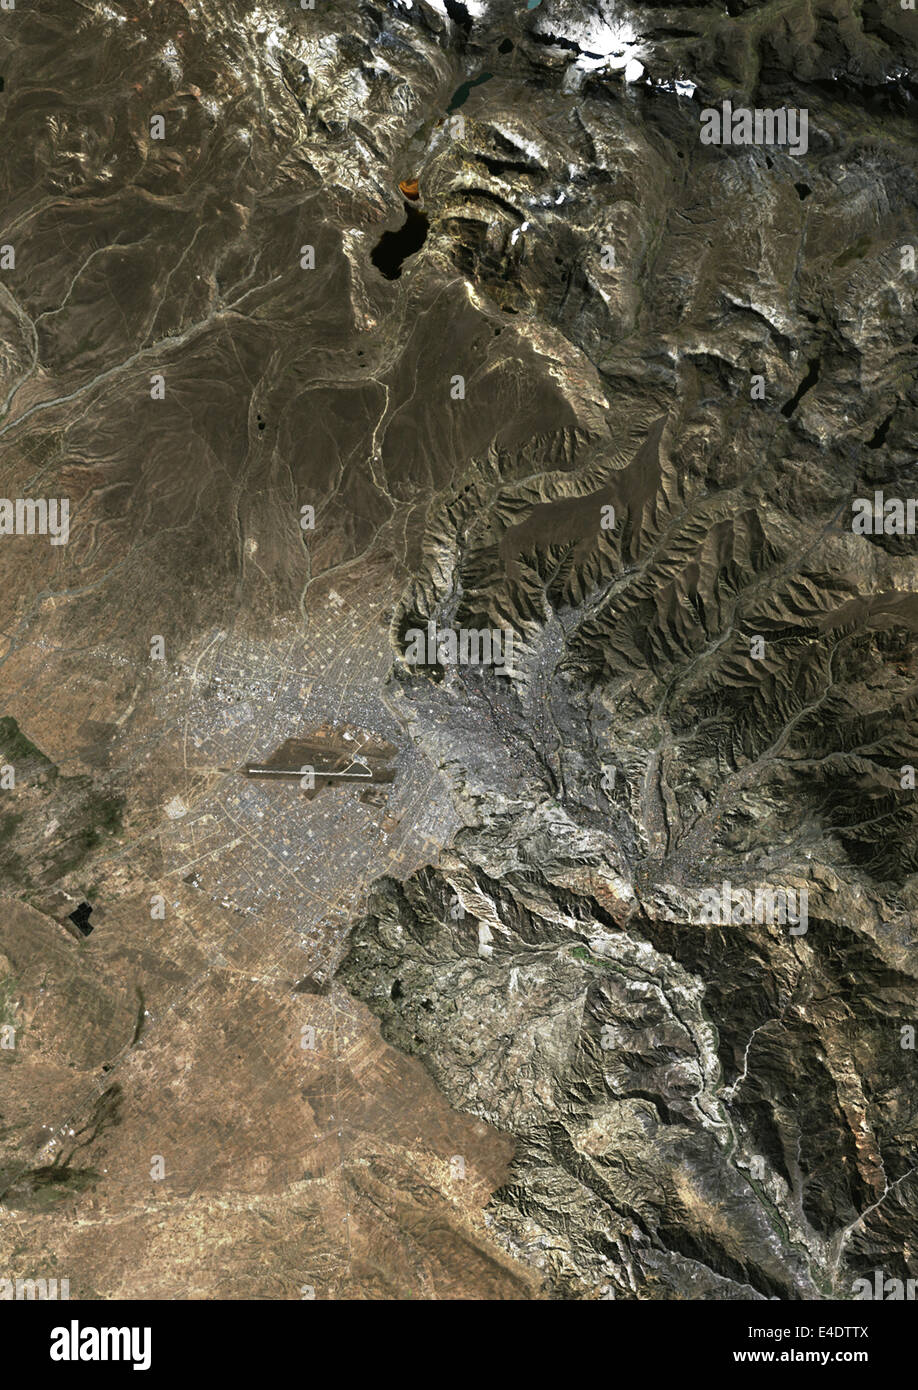 La Paz, Bolivia, True Colour Satellite Image. La Paz, Bolivia. True colour satellite image of La Paz, the capital city of Bolivi Stock Photo